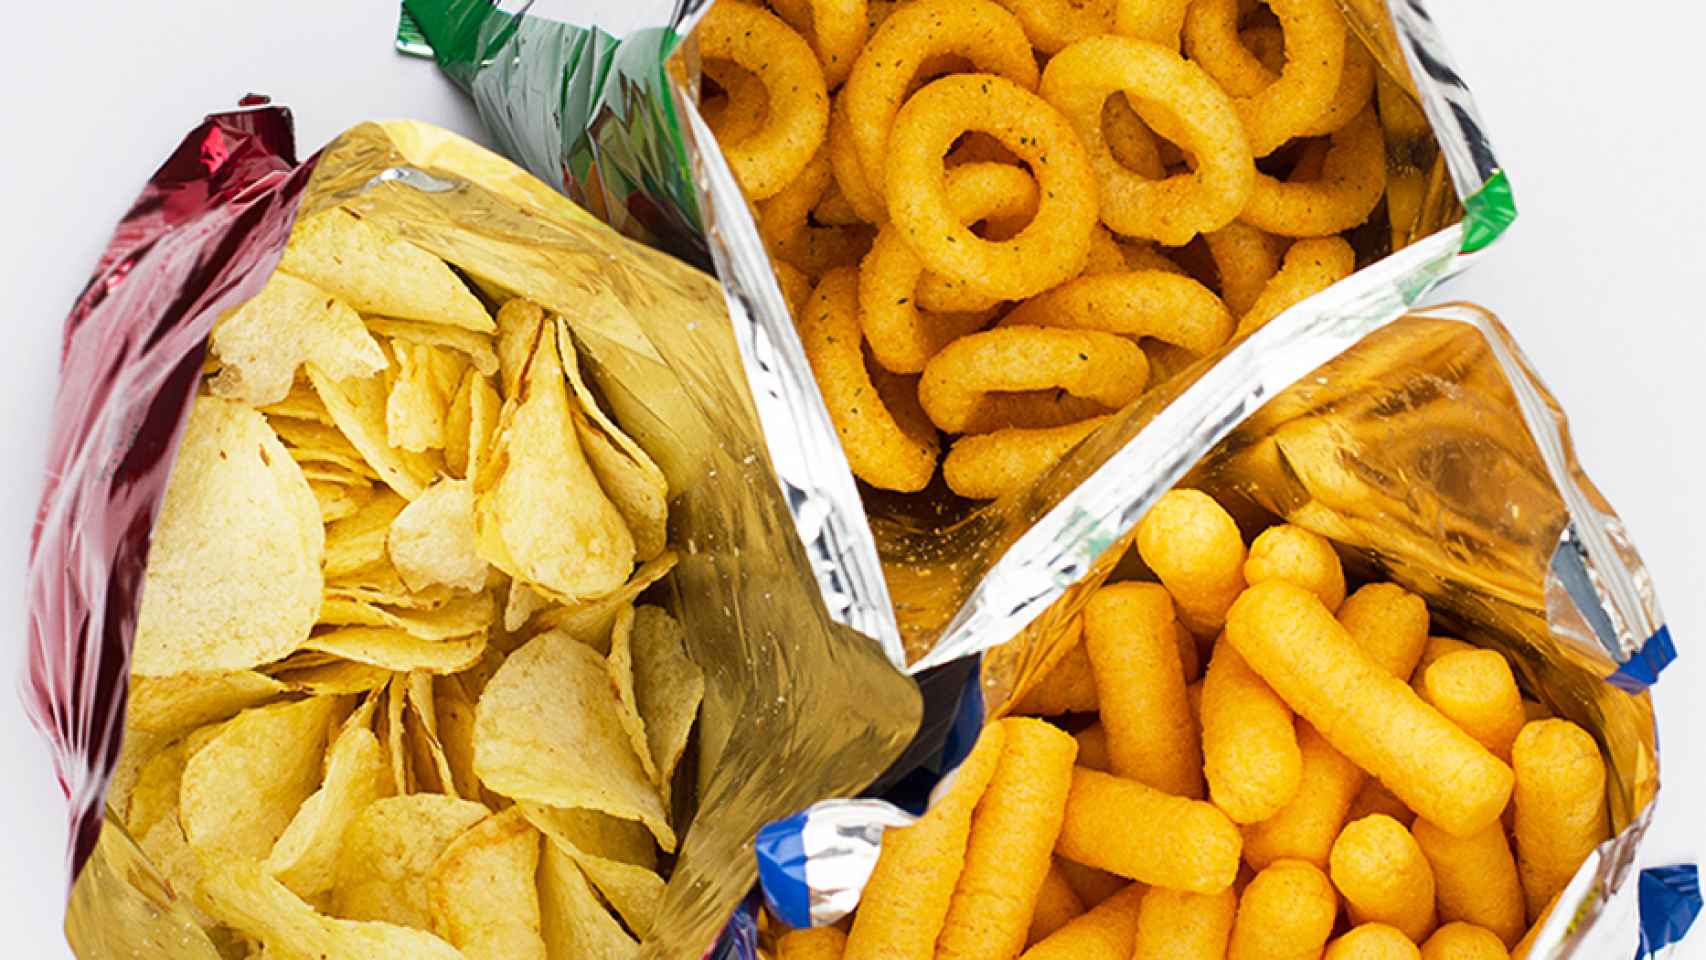 ALIMENTACIÓN MÁS SALUDABLE  Adiós a las patatas fritas de bolsa: aquí  tienes unos snacks mucho más saludables